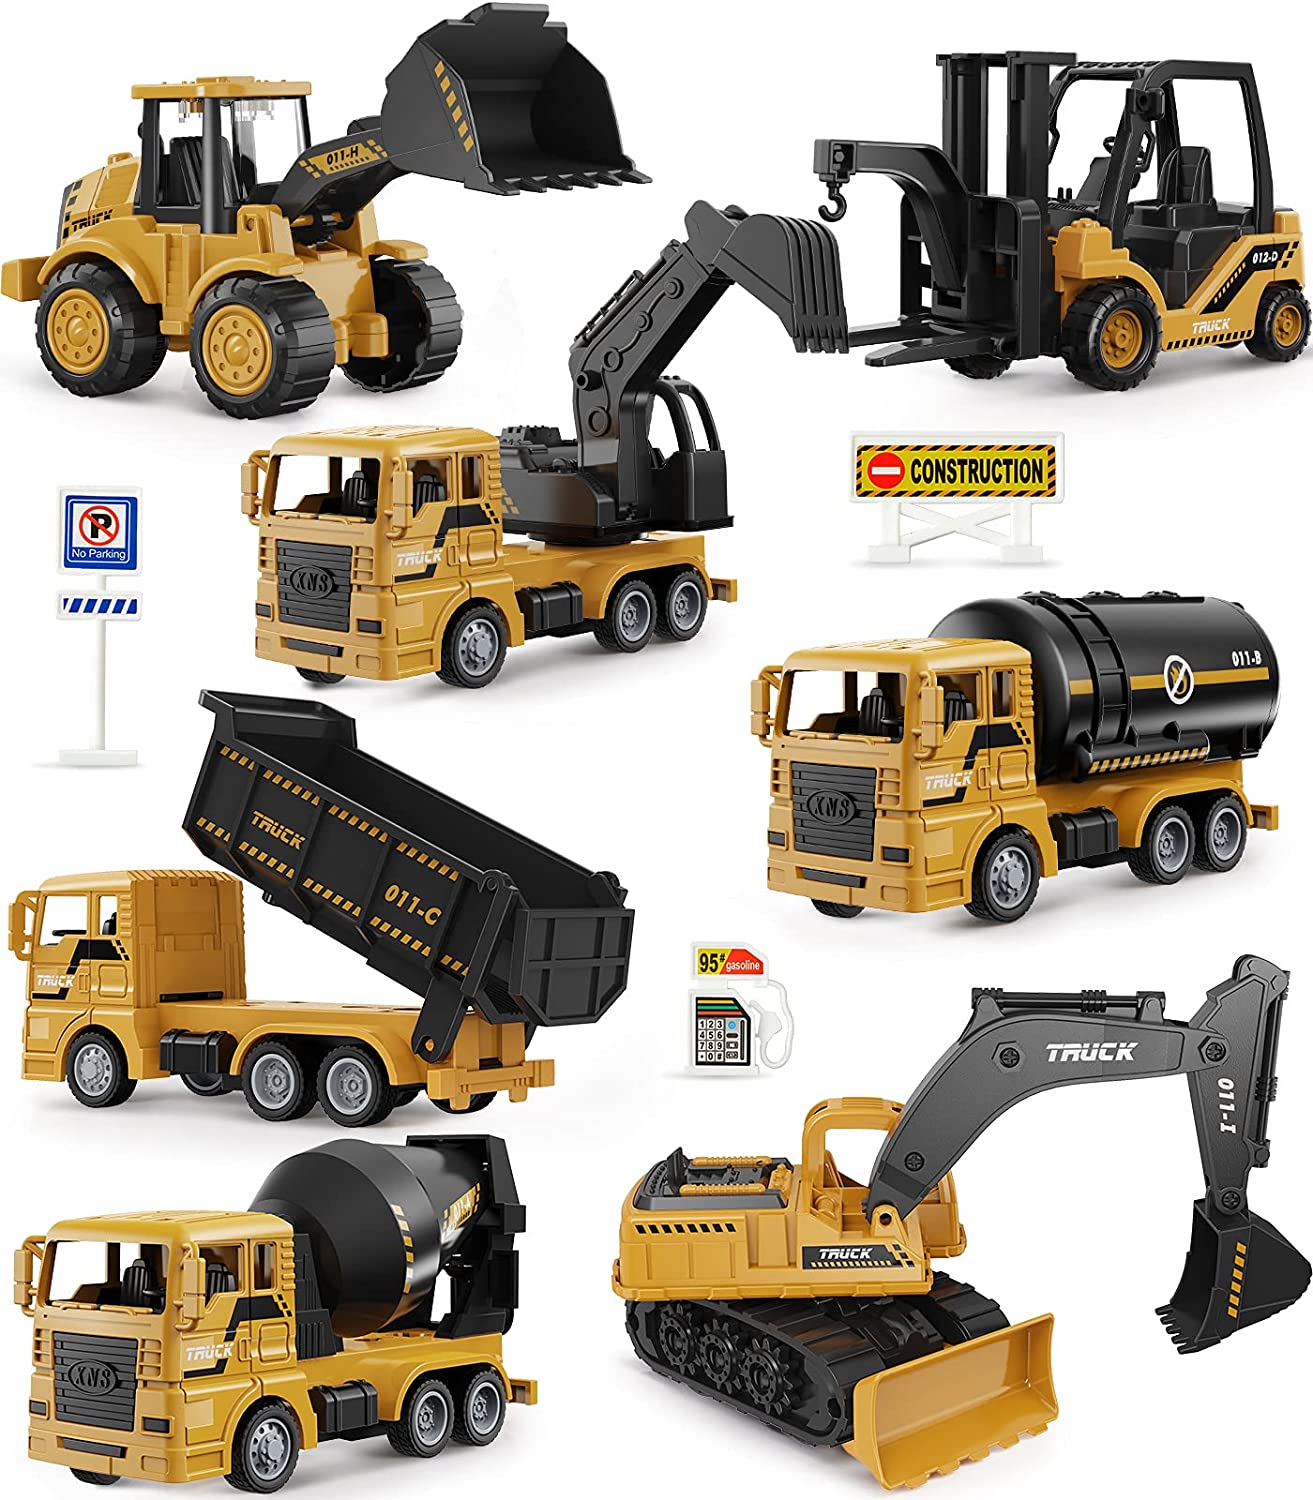 Geyiie Store Construction Trucks Toy Set